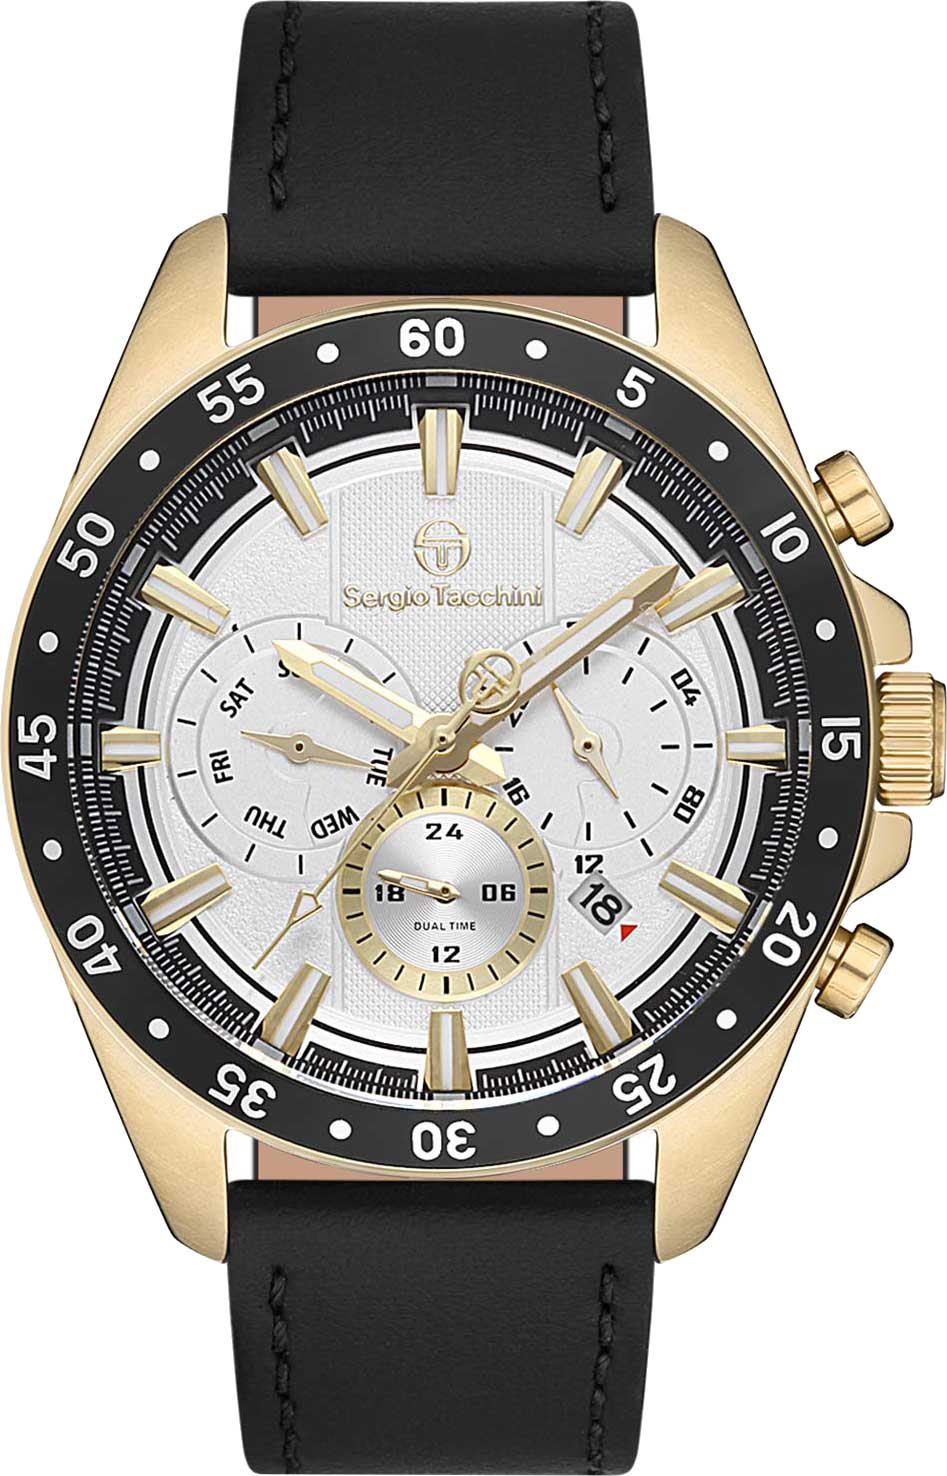 Наручные часы Sergio Tacchini ST.1.10201-2